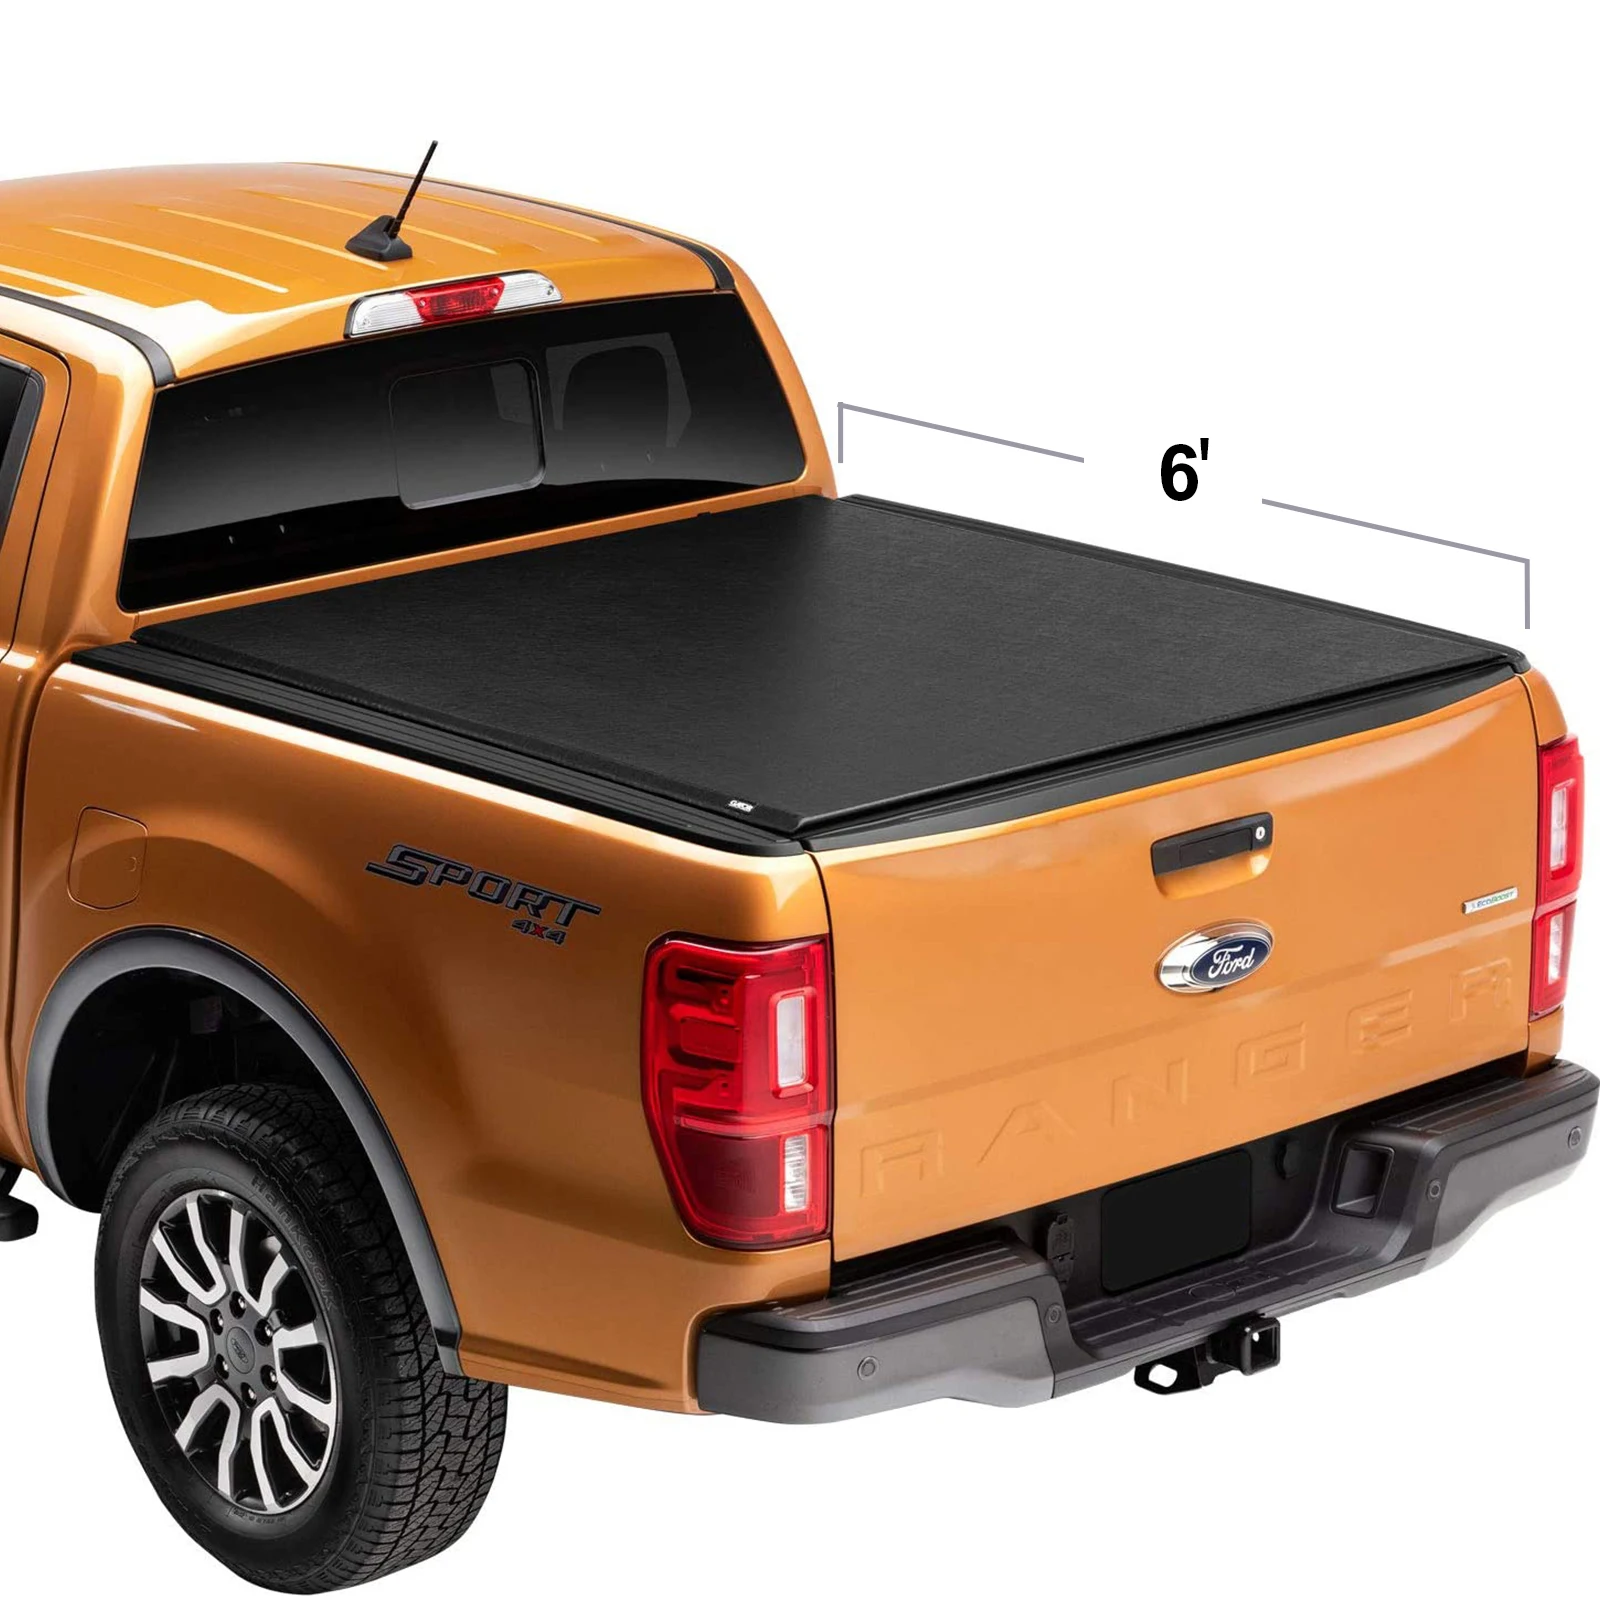 Оптовая продажа с фабрики чехол для кровати грузовика из мягкого проката многофункциональная задняя накладка для 6-футовой кровати Ford pickup (71,999 дюймов)